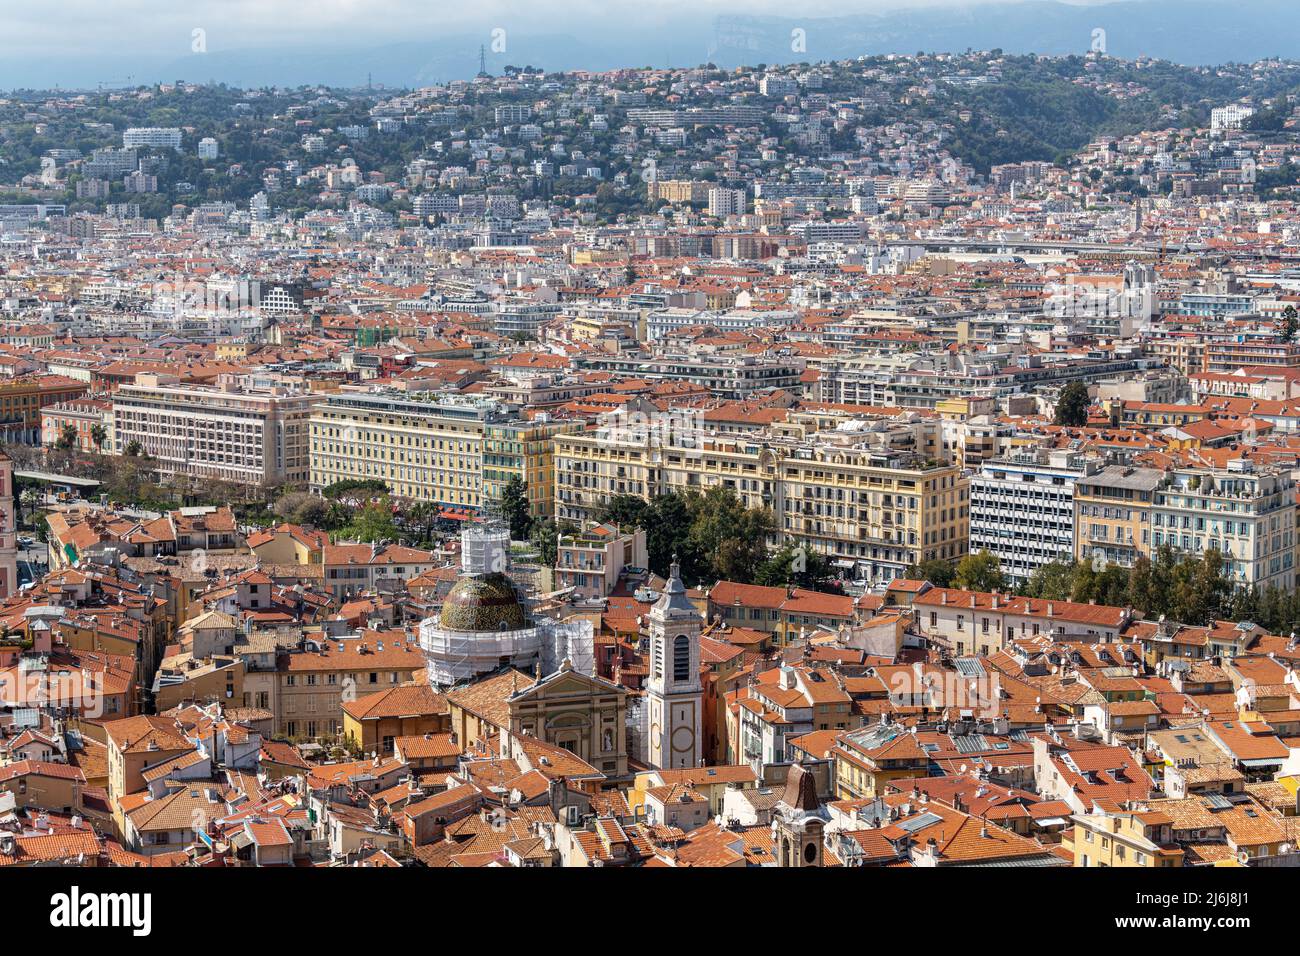 Der Blick über die Altstadt von Nizza vom Schlossberg auf die Kathedrale von Nizza. Stockfoto